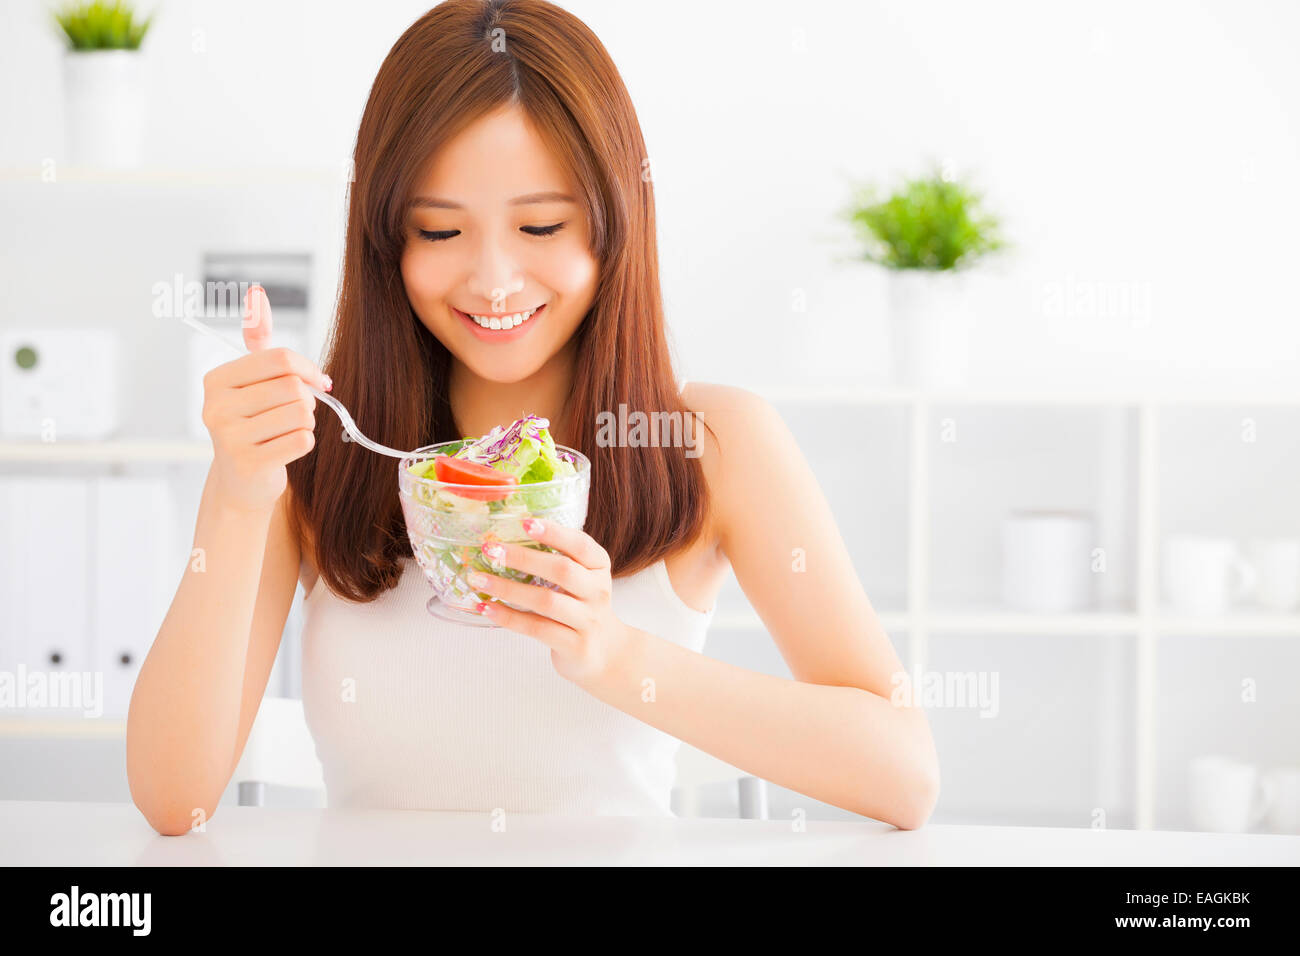 Belle jeune femme asiatique une alimentation saine Banque D'Images